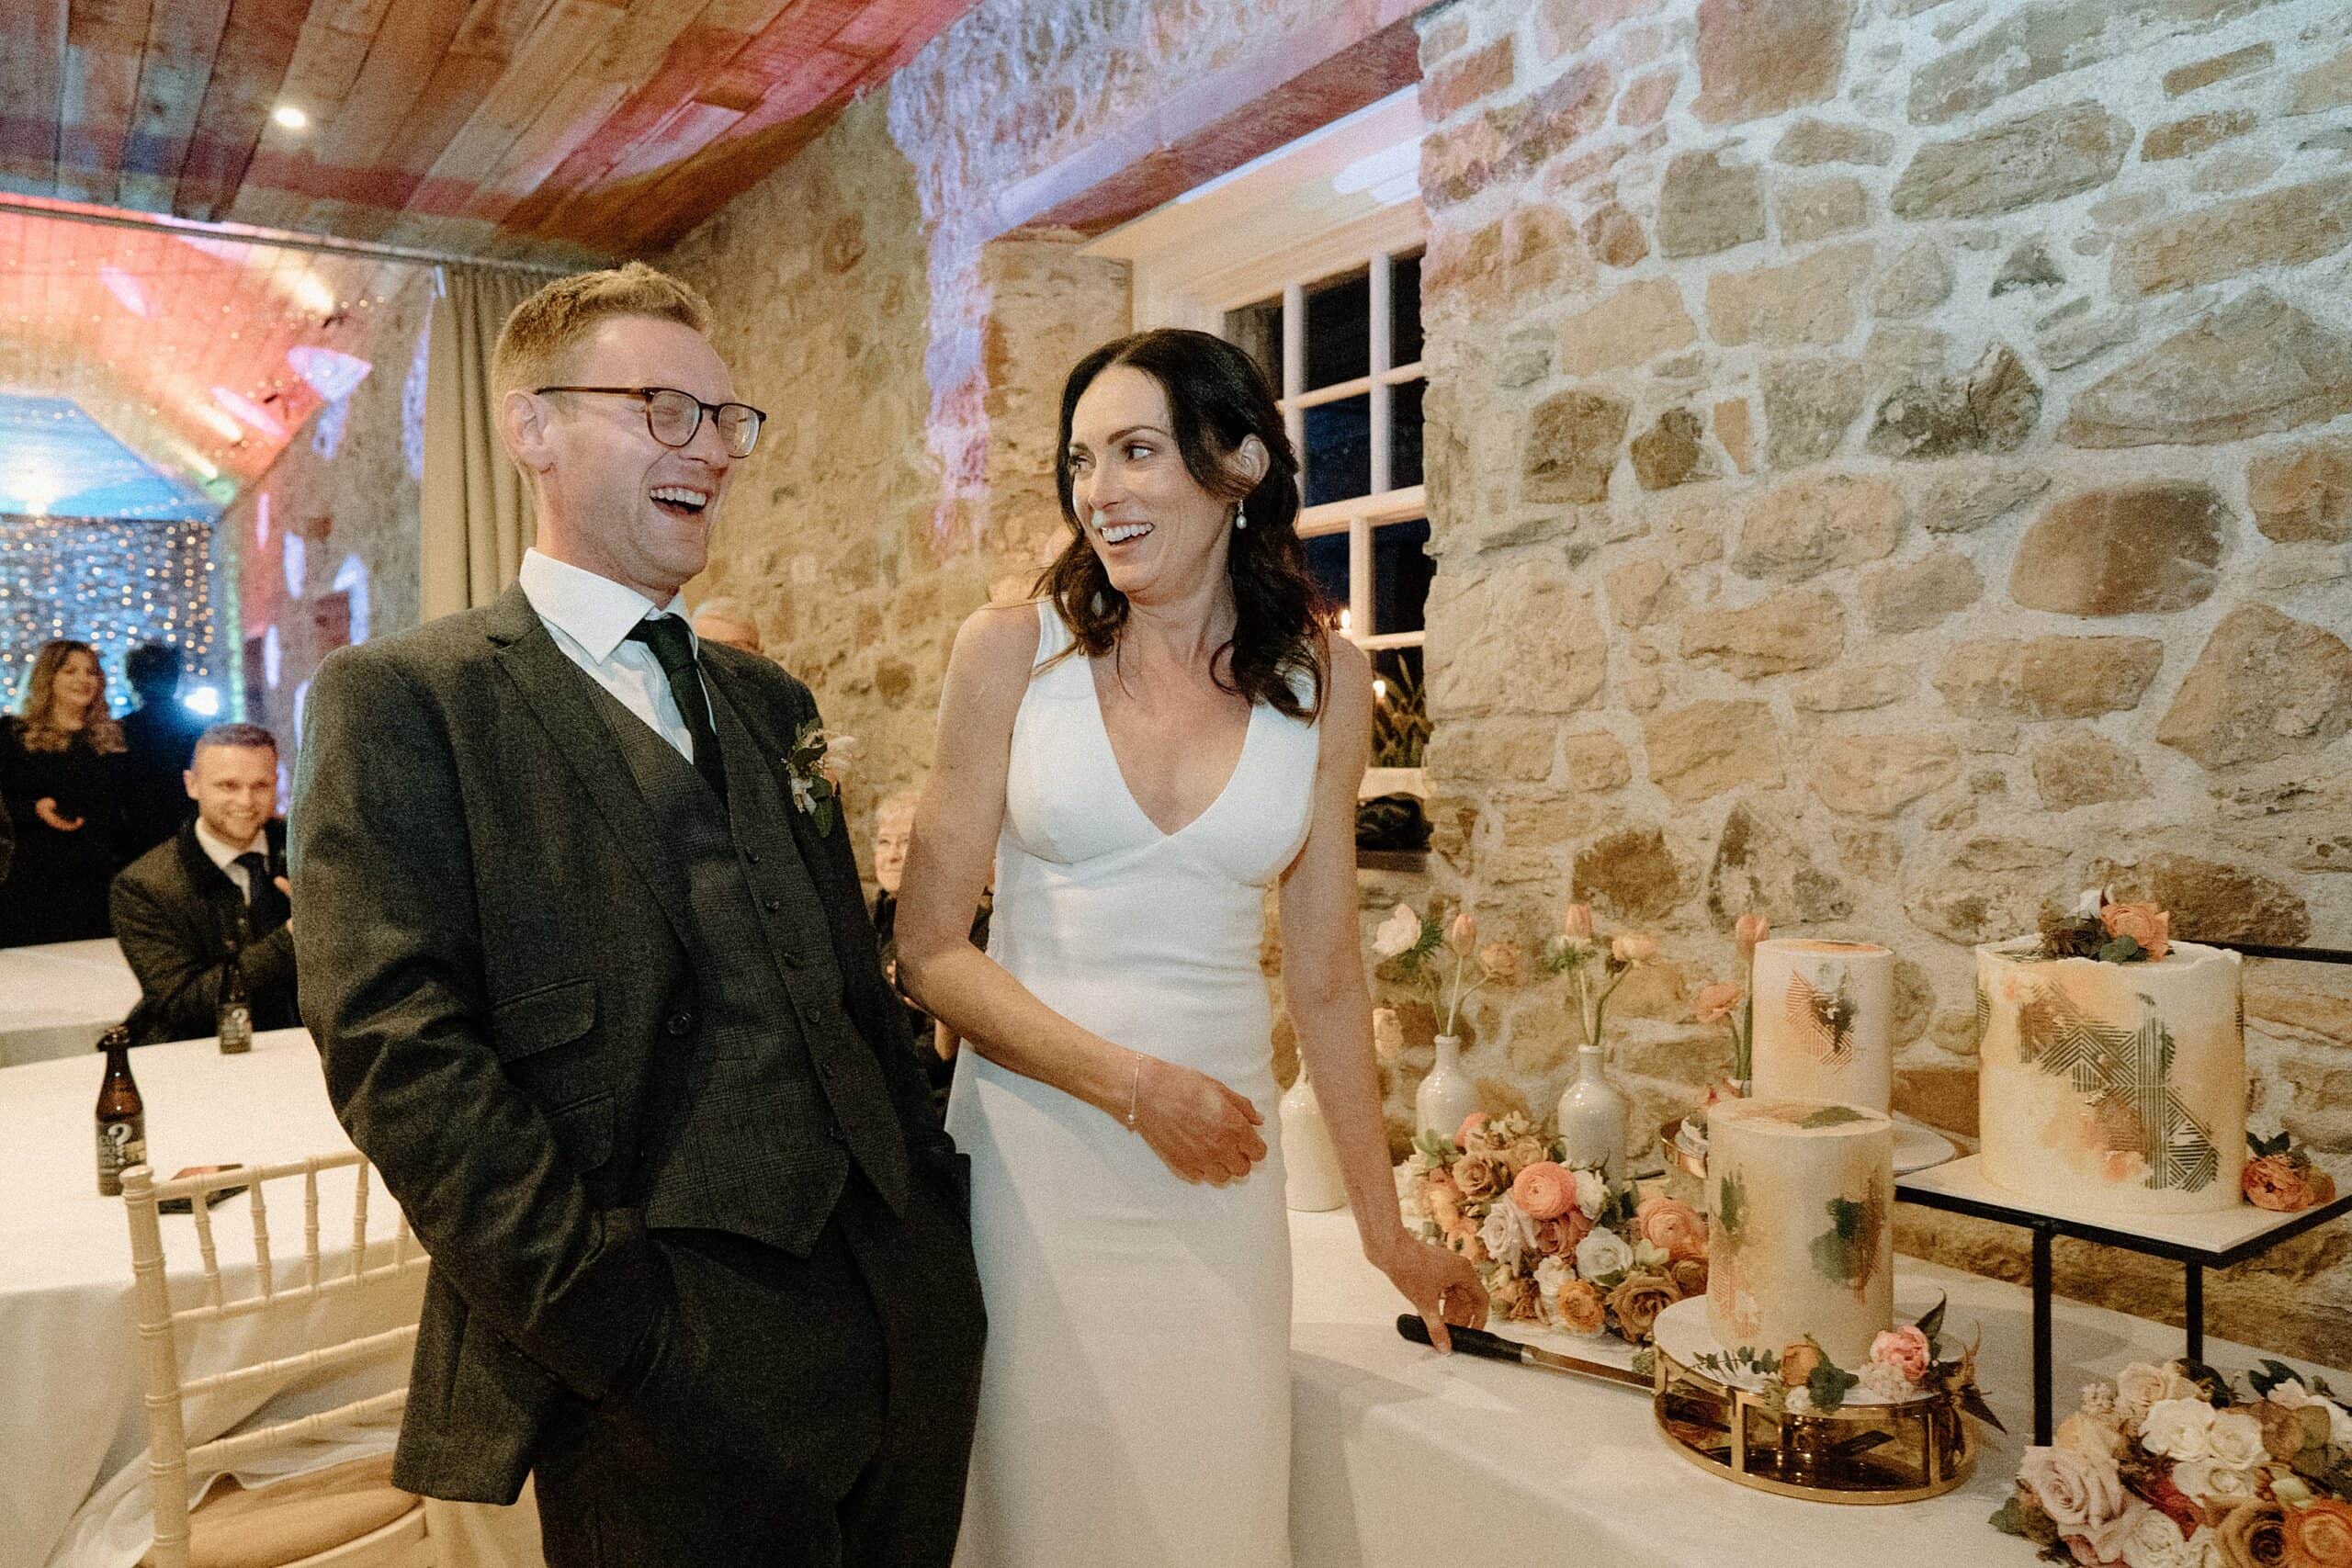 the bride and groom cut their wedding cake following their joyful wedding ceremony at a farm wedding venue in east lothian in scotland